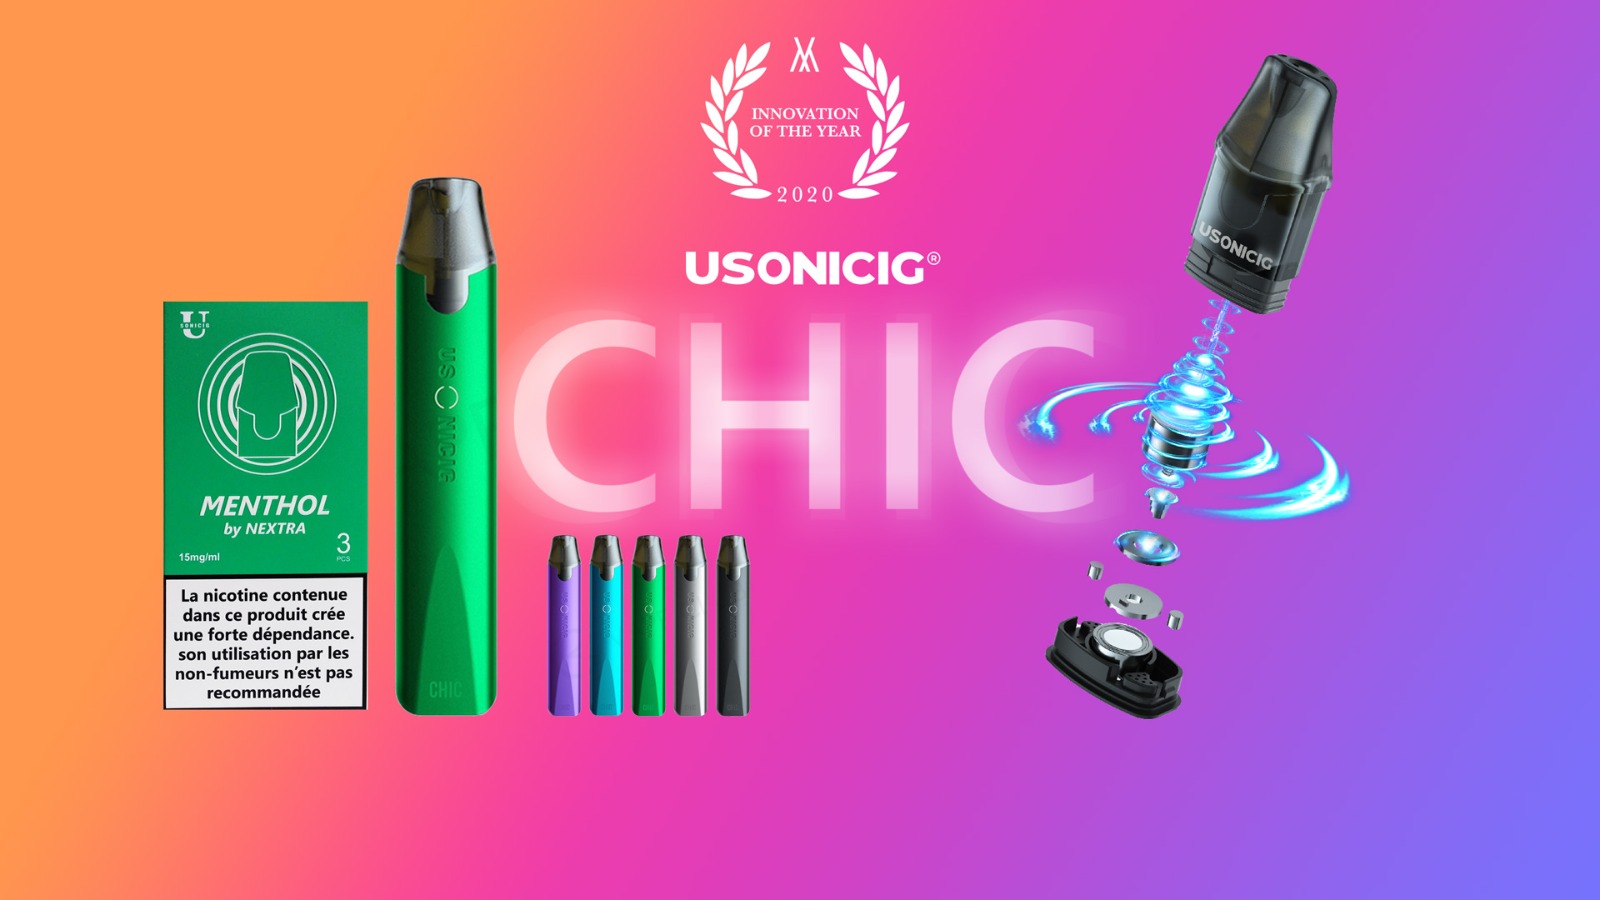 Le Kit Chic Ultrasonic par Usonicig a été récompensé par un prix, celui de l'innovation de l'année 2020.